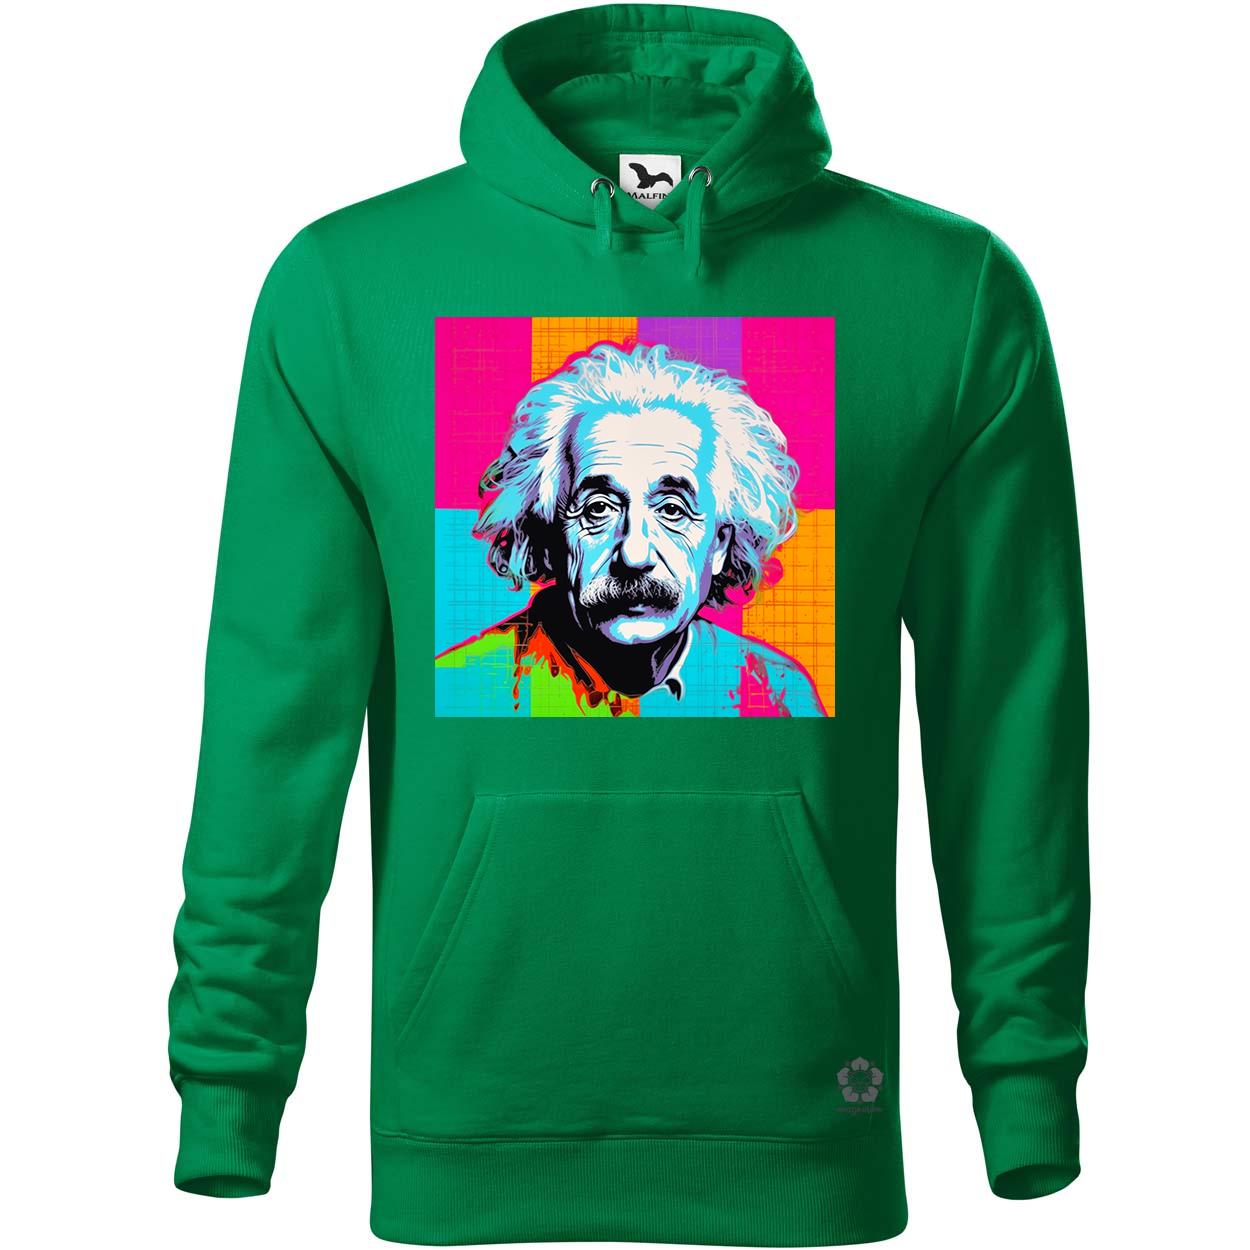 Pop art Einstein v12